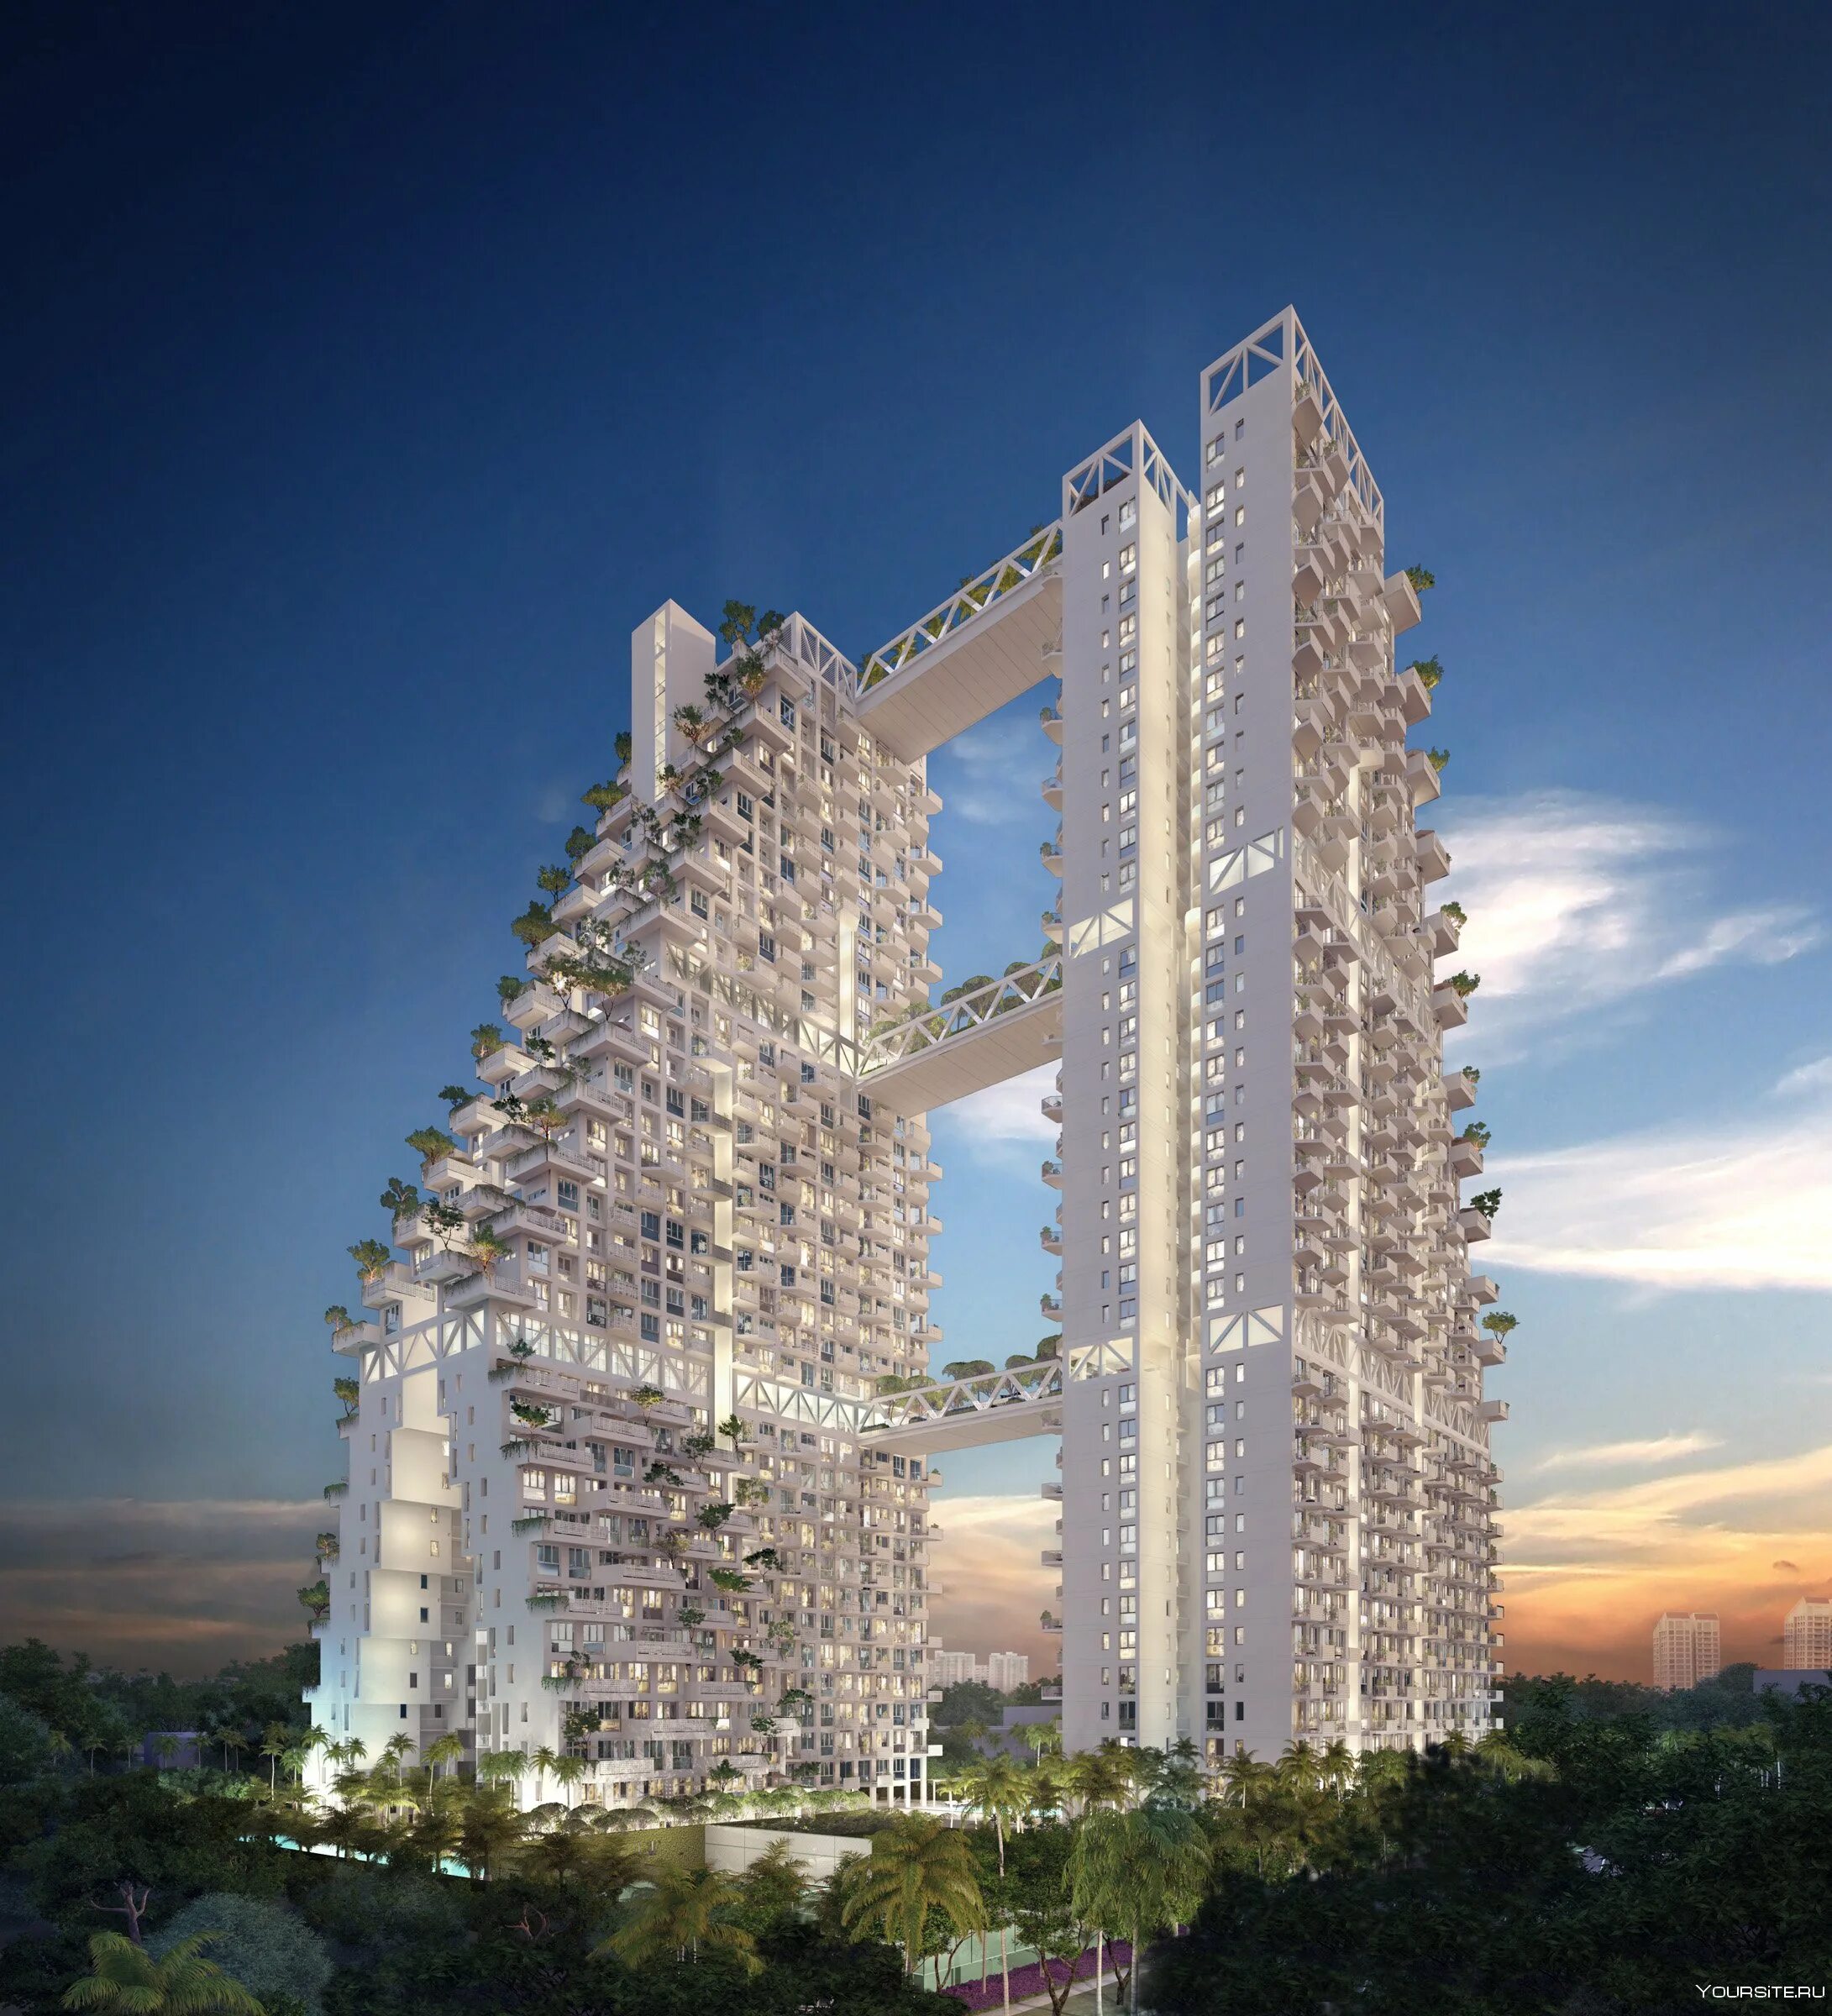 Моше Сафди проекты. Моше Сафди Архитектор. Моше Сафди Сингапур. Жилой комплекс Sky Habitat в Сингапуре.